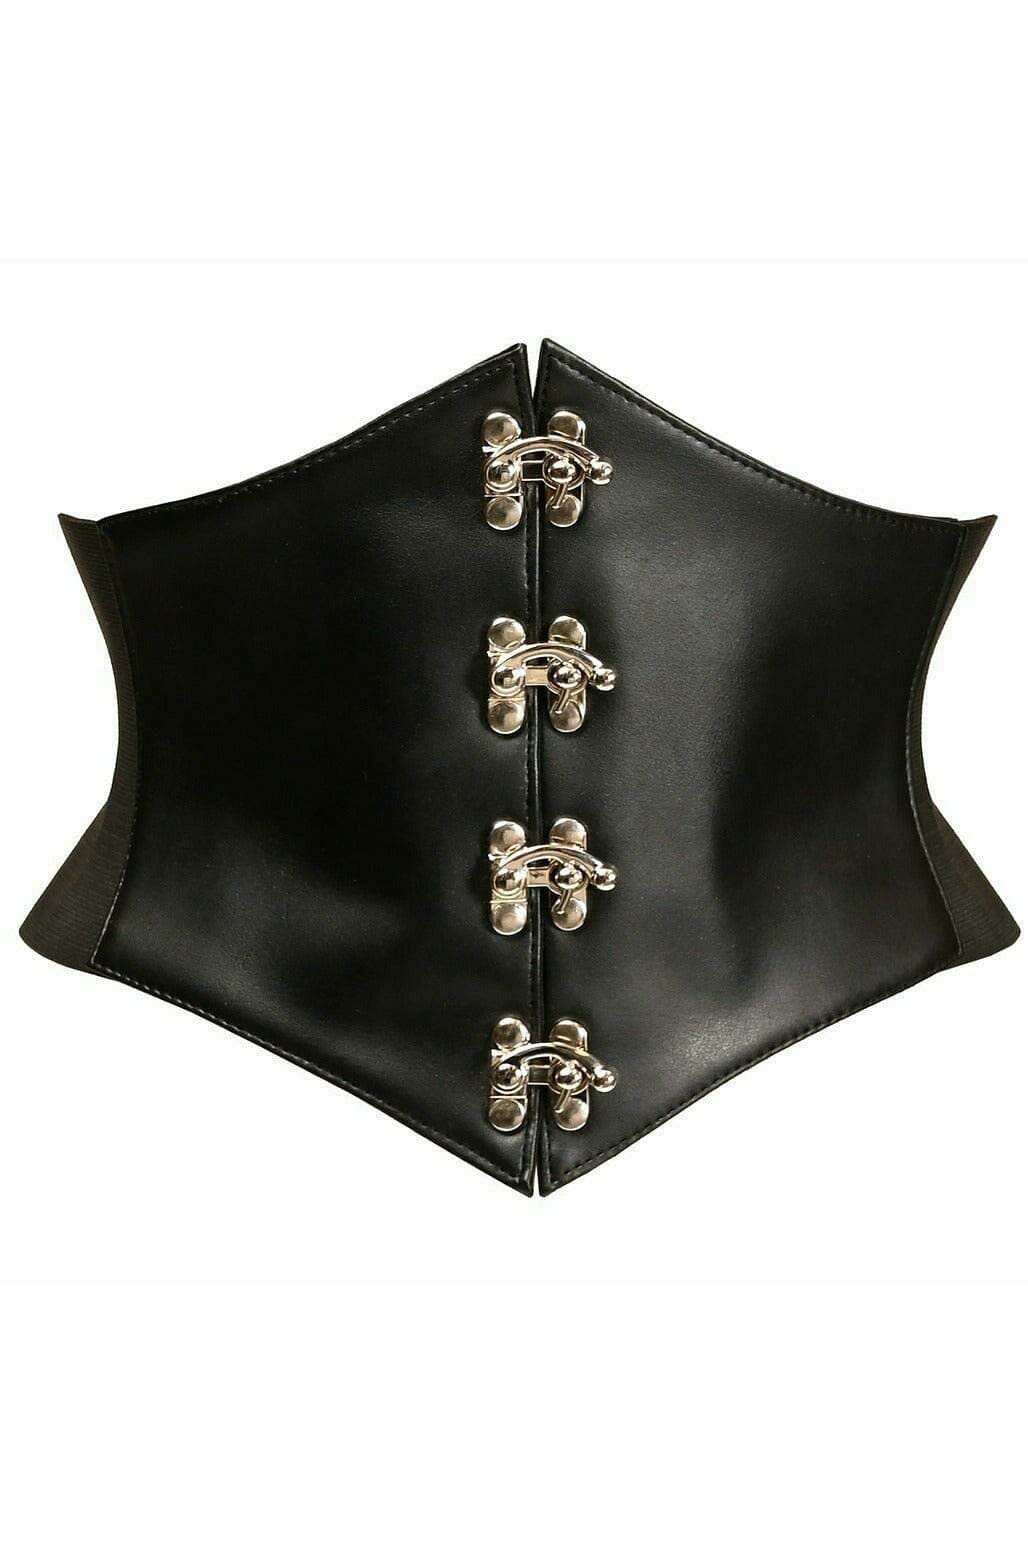 Lavish Black Faux Leather Corset Belt Cincher w/Clasps-Corset Belts-Daisy Corsets-Black-S-SEXYSHOES.COM